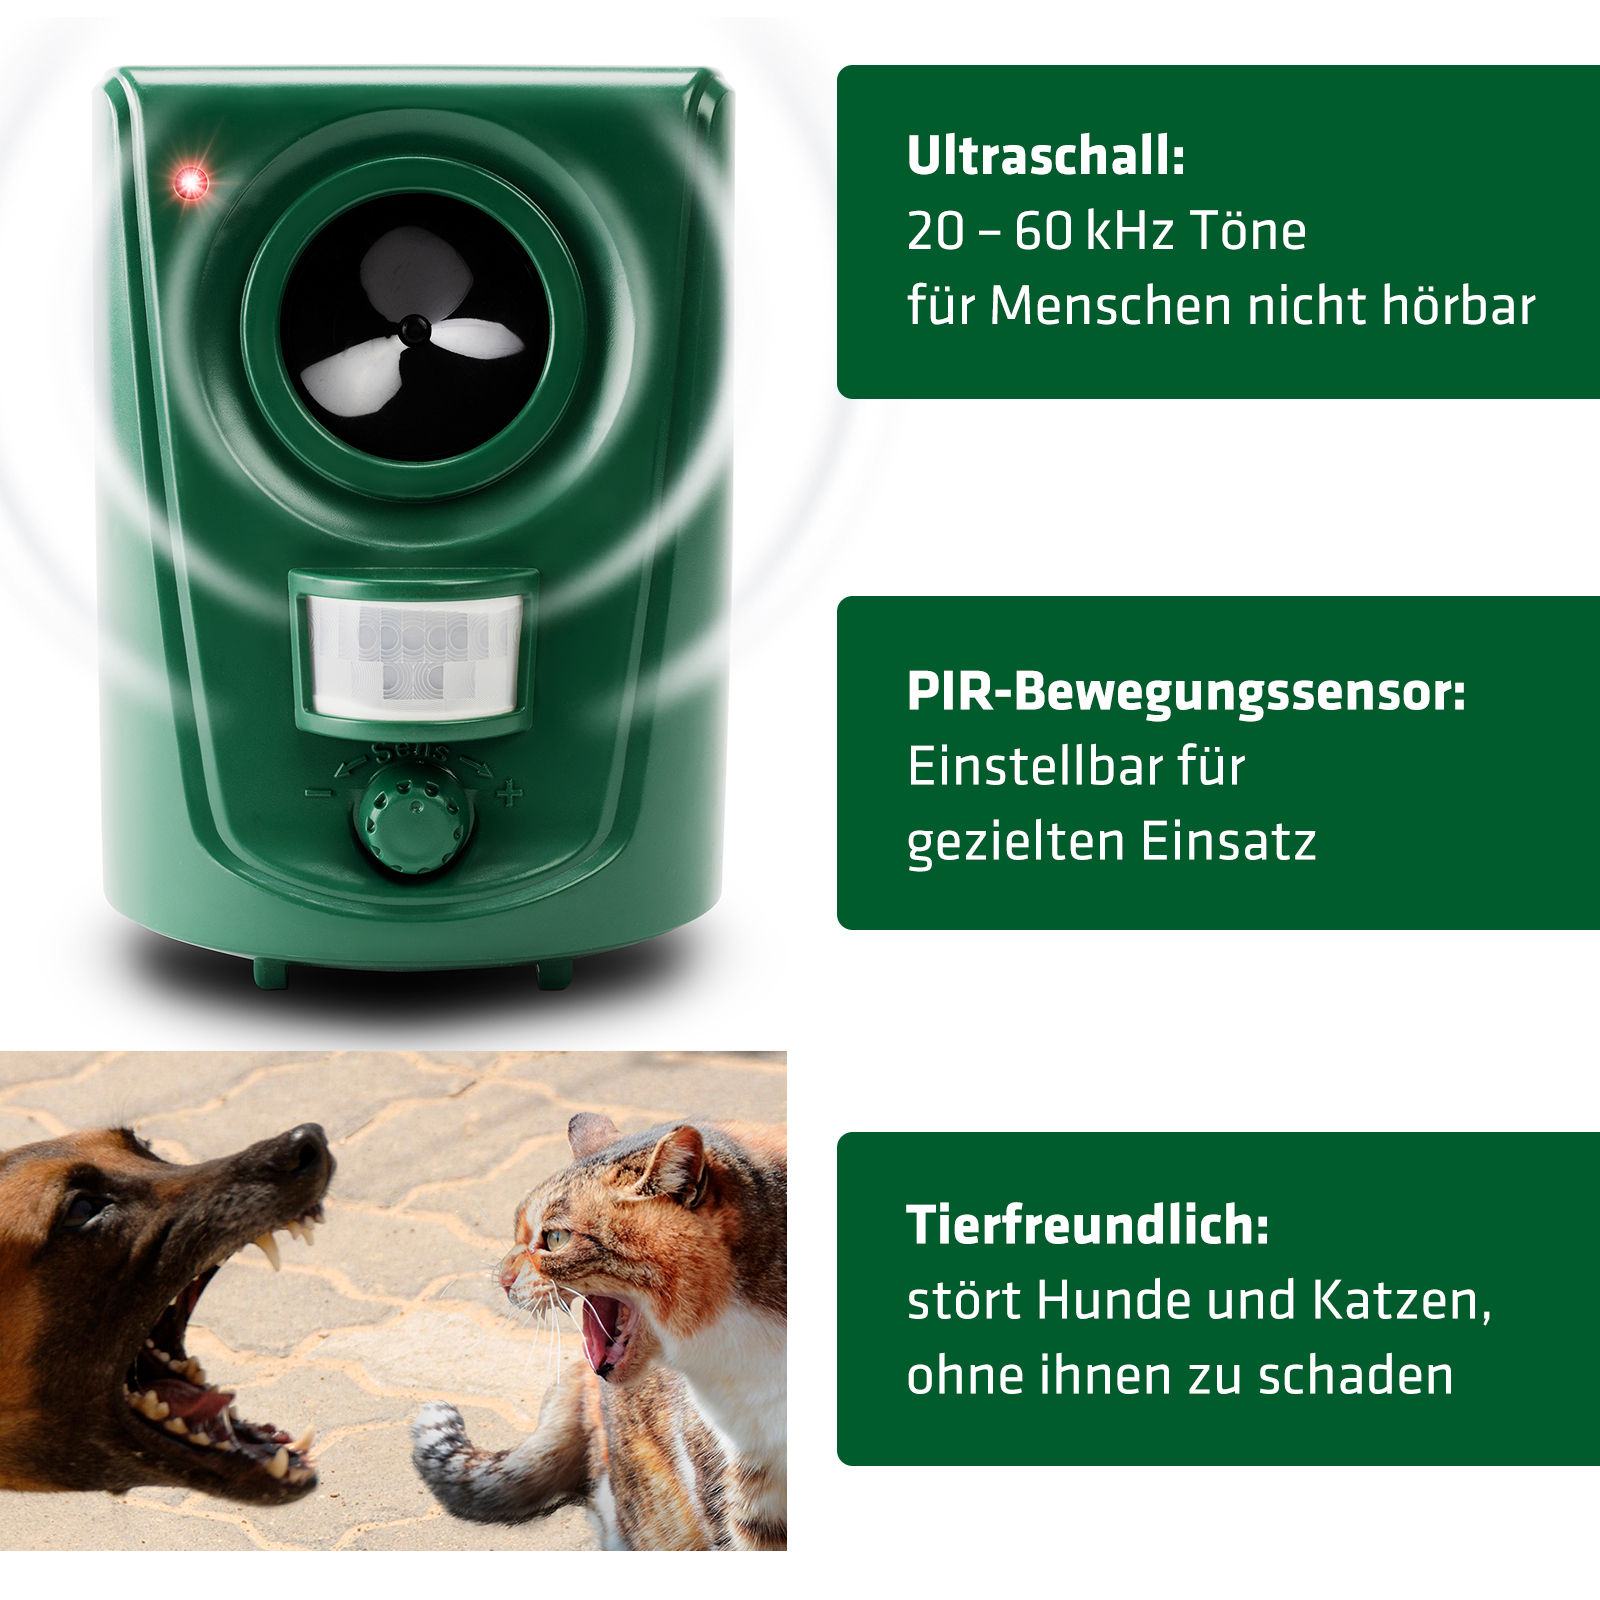 Ultraschall-Hunde- und Katzenschreck - Beckmann GmbH & Co. KG